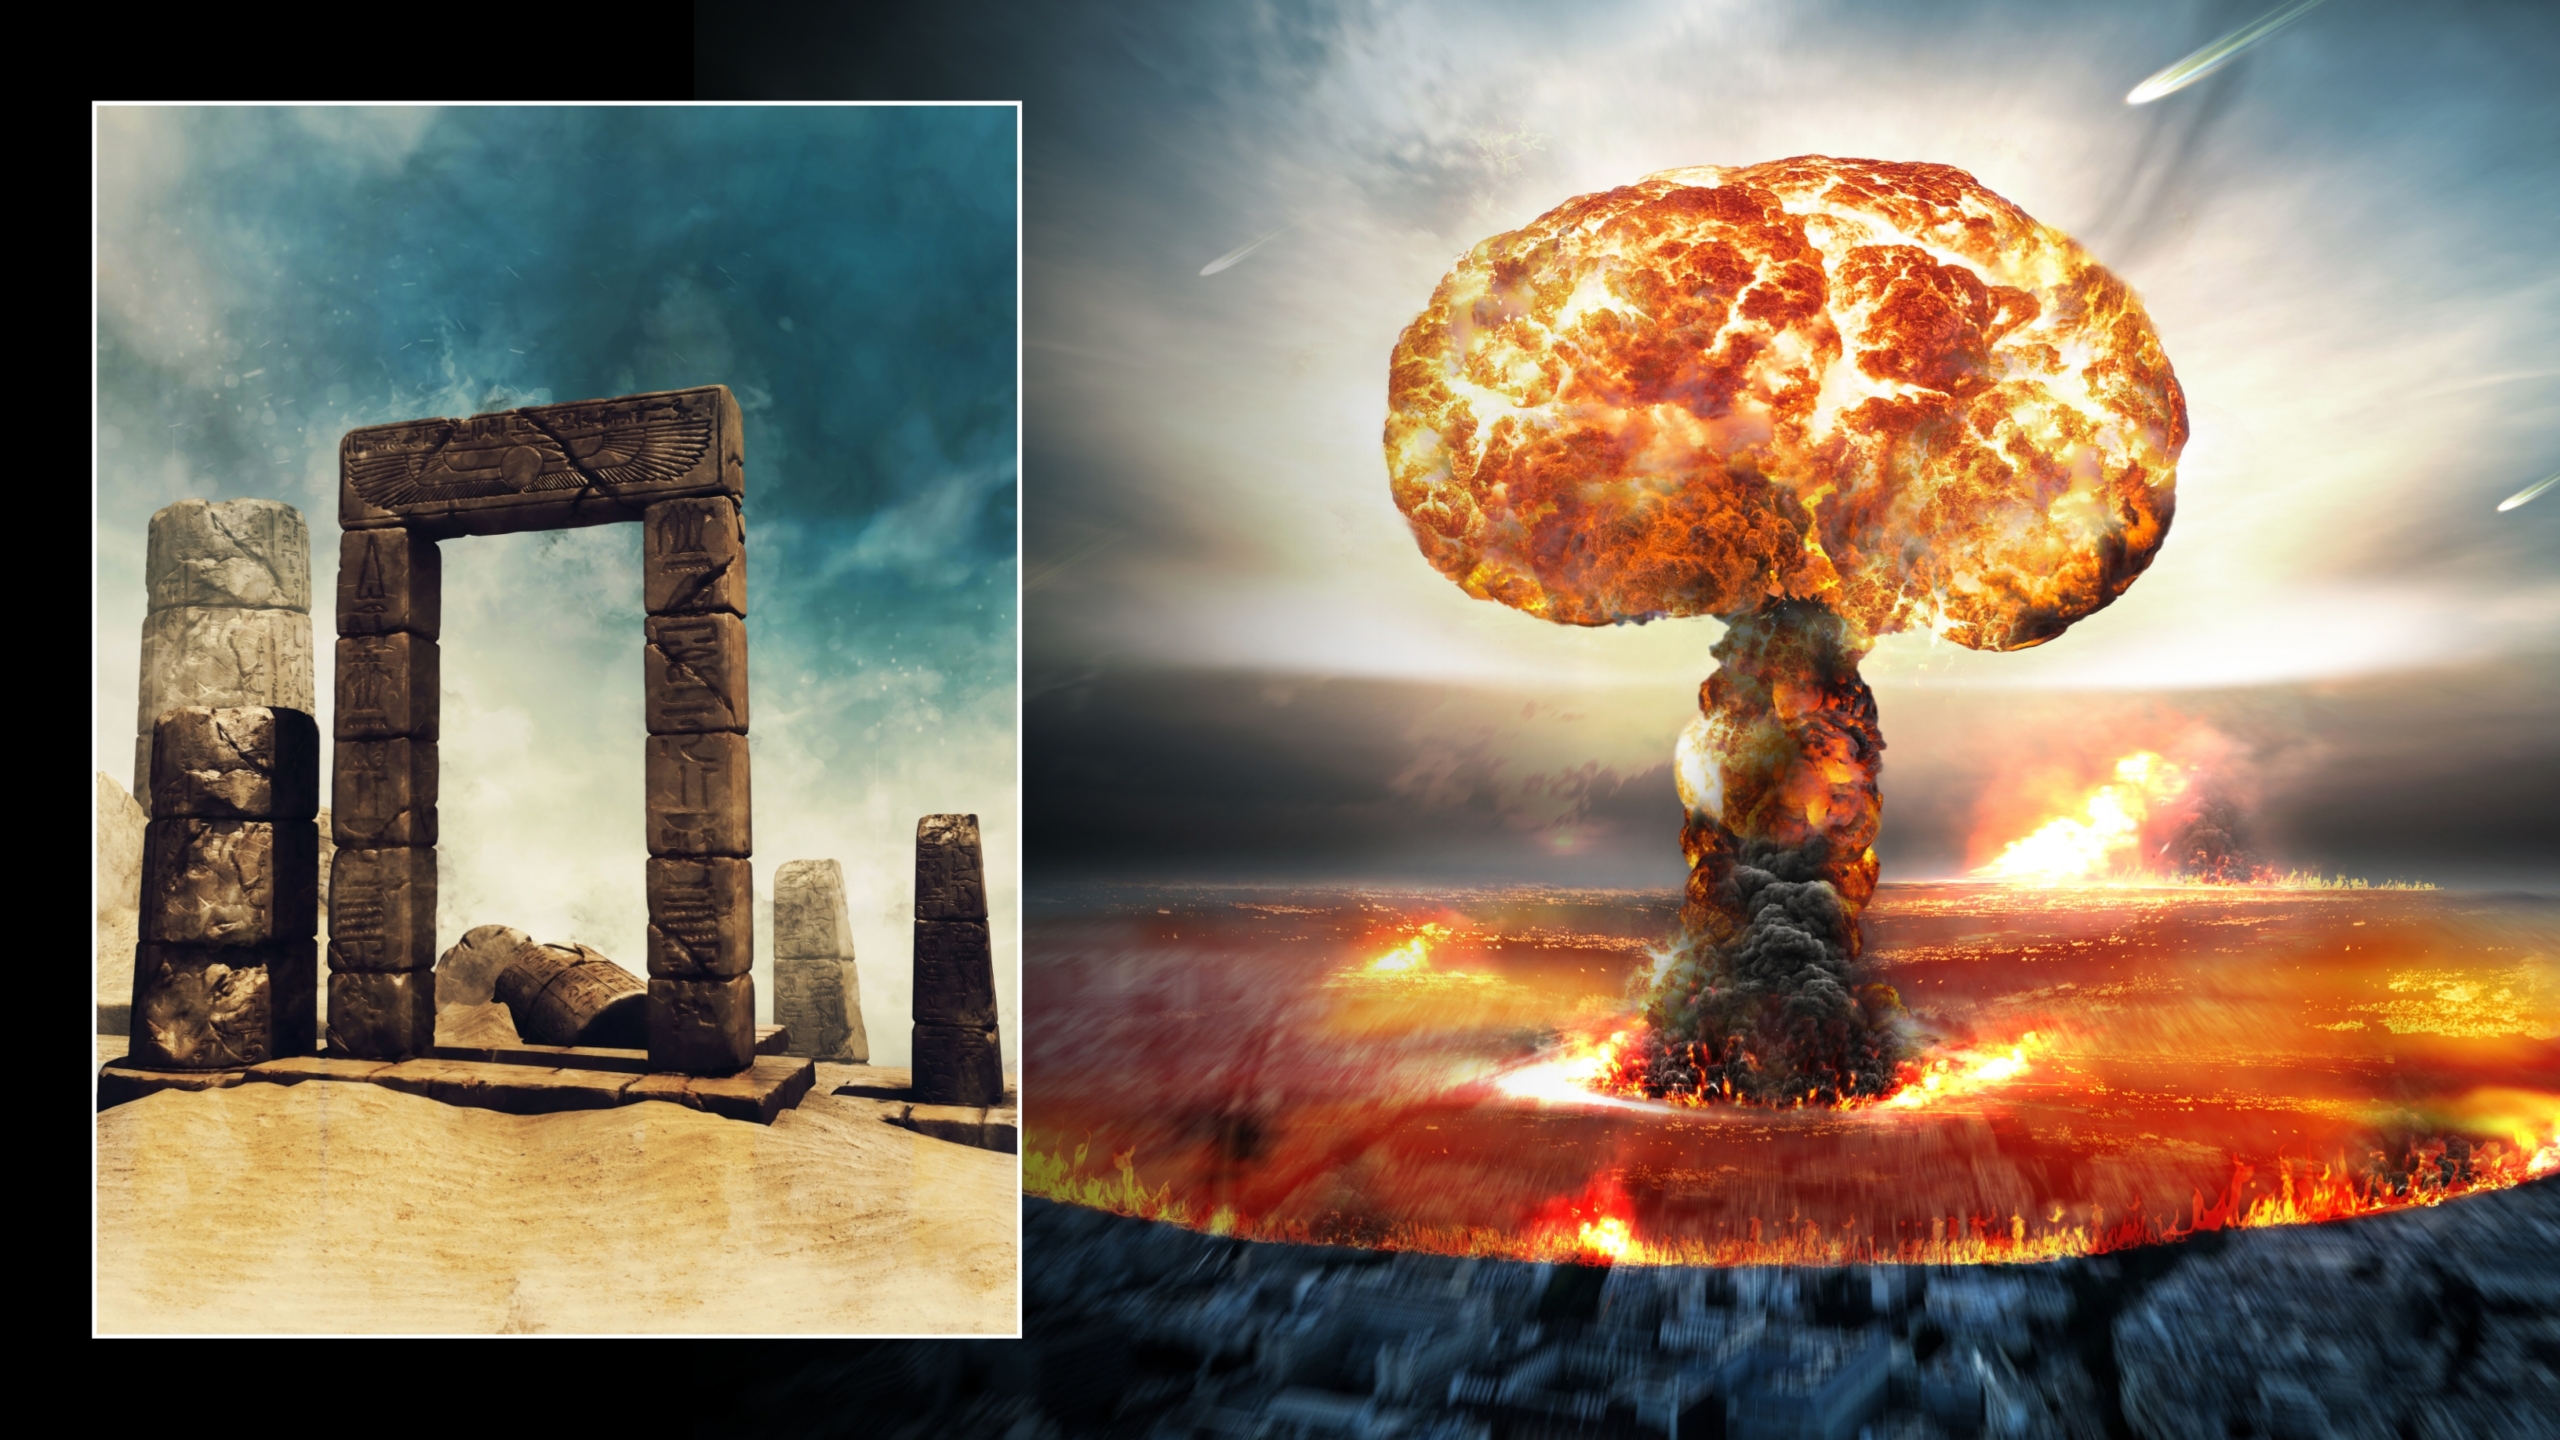 Ilustraciones de explosión atómica y ruinas antiguas en el desierto. Créditos de imagen ©: Obsidianfantacy & Razvan lonut Dragomirescu | Licencia de DreamsTime.com (Fotos de archivo de uso editorial / comercial)